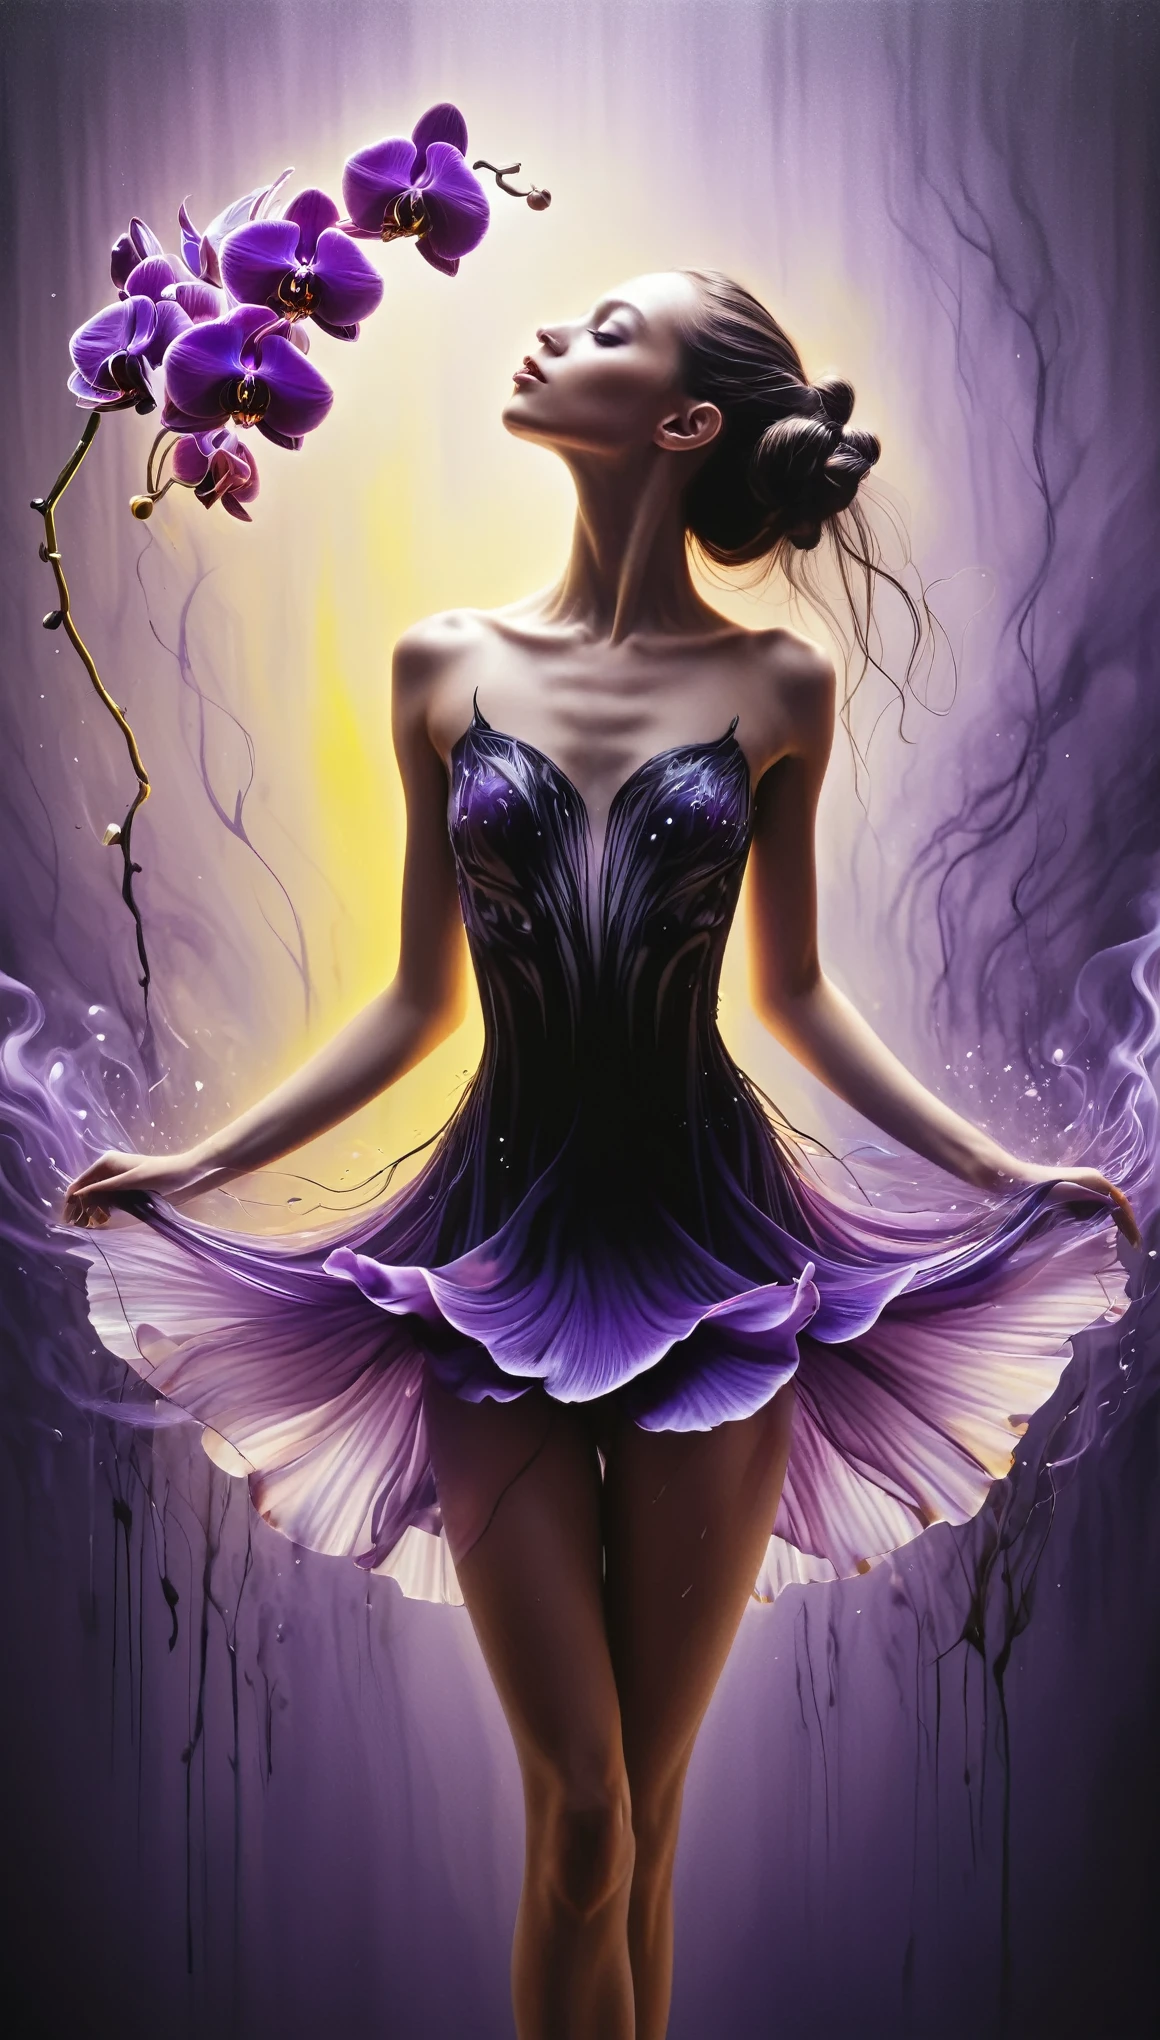 Гиперреалистичный аэрографический рисунок в стиле Марка Алланте и Алана Олдриджа., черно-фиолетовая орхидея, превращающаяся в девушку с мистической двойной экспозицией, пряди ее волос превращаются в нежные листья и лепестки, которые порхают в движении балерины., сцена окутана волшебным желтым дымом, который пронизывает композицию, природа плавно сливается с фантазией в сюрреалистическом танце света и цвета.